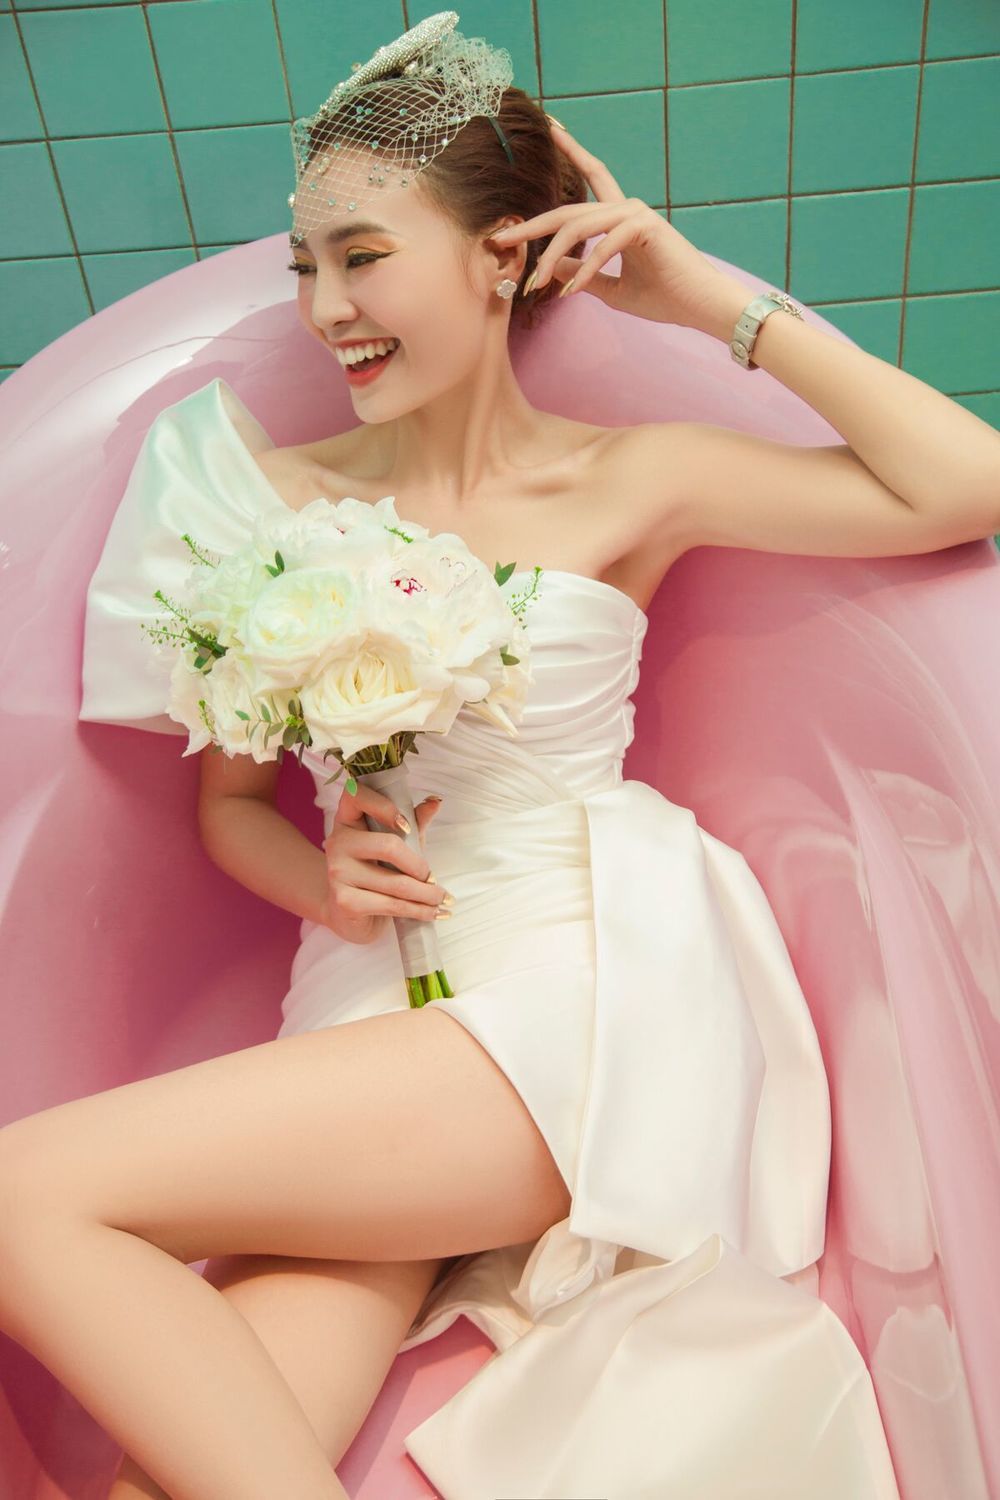  
Bộ ảnh "em cũng muốn lấy chồng" của Lan Ngọc nhận được lời khen của người hâm mộ. Trong chiếc váy cưới phá cách màu trắng, diên viên cầm hoa và đeo mạng che đầu mang lại hình ảnh cô dâu sexy, hiện đại. 